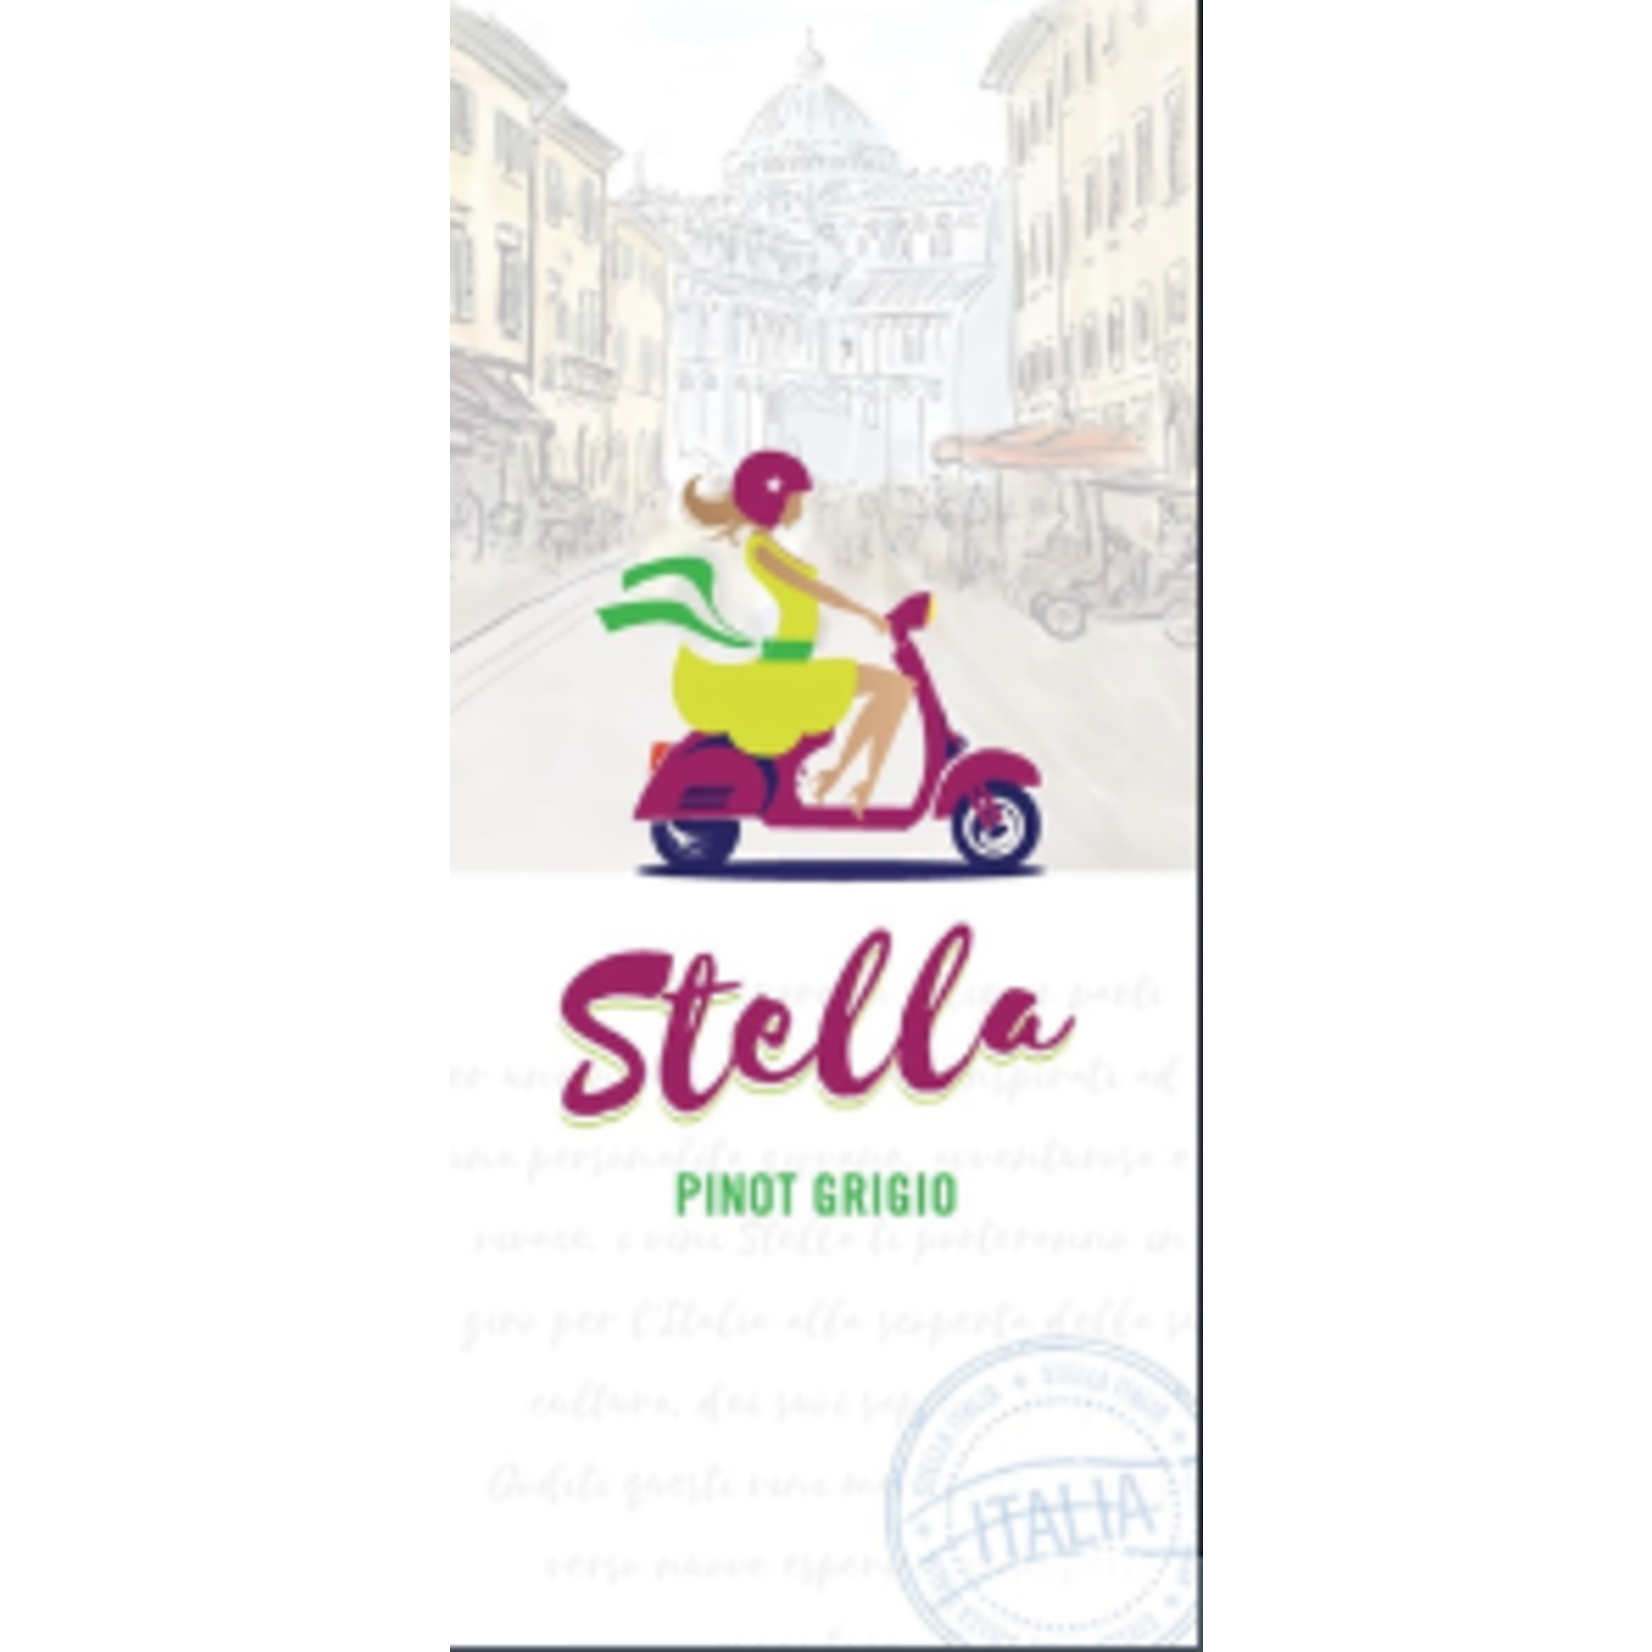 Stella Stella Pinot Grigio 2020 Delle Venezie, Italy